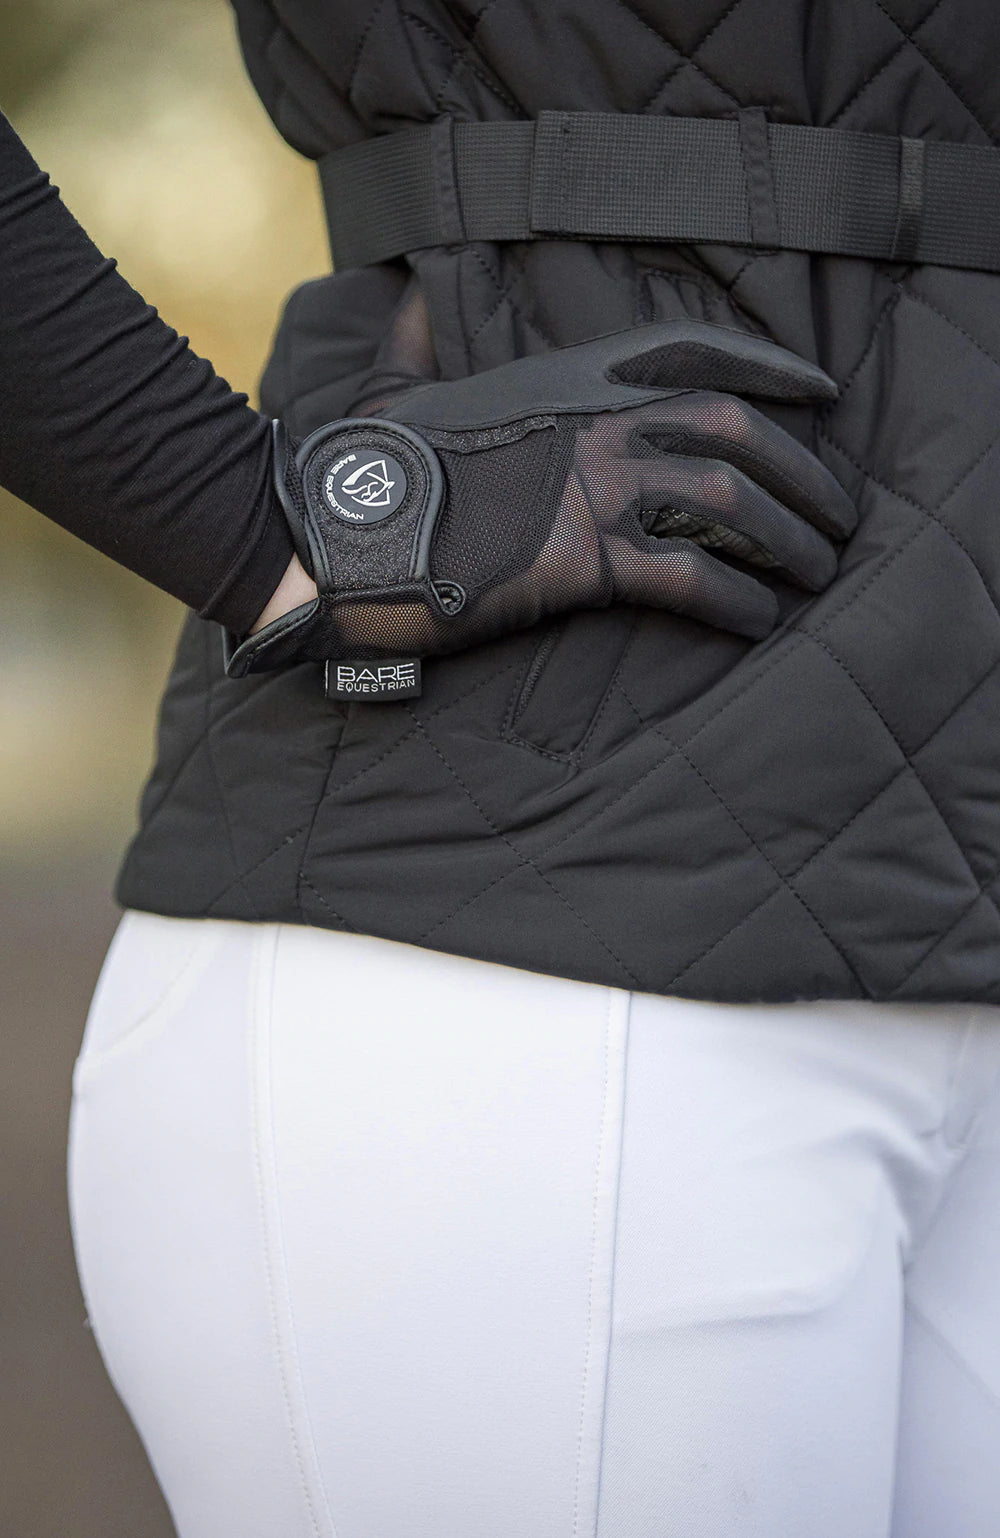 Mill & Hide - Bare Equestrian - Bare Pro Rider Mesh Grip Gloves